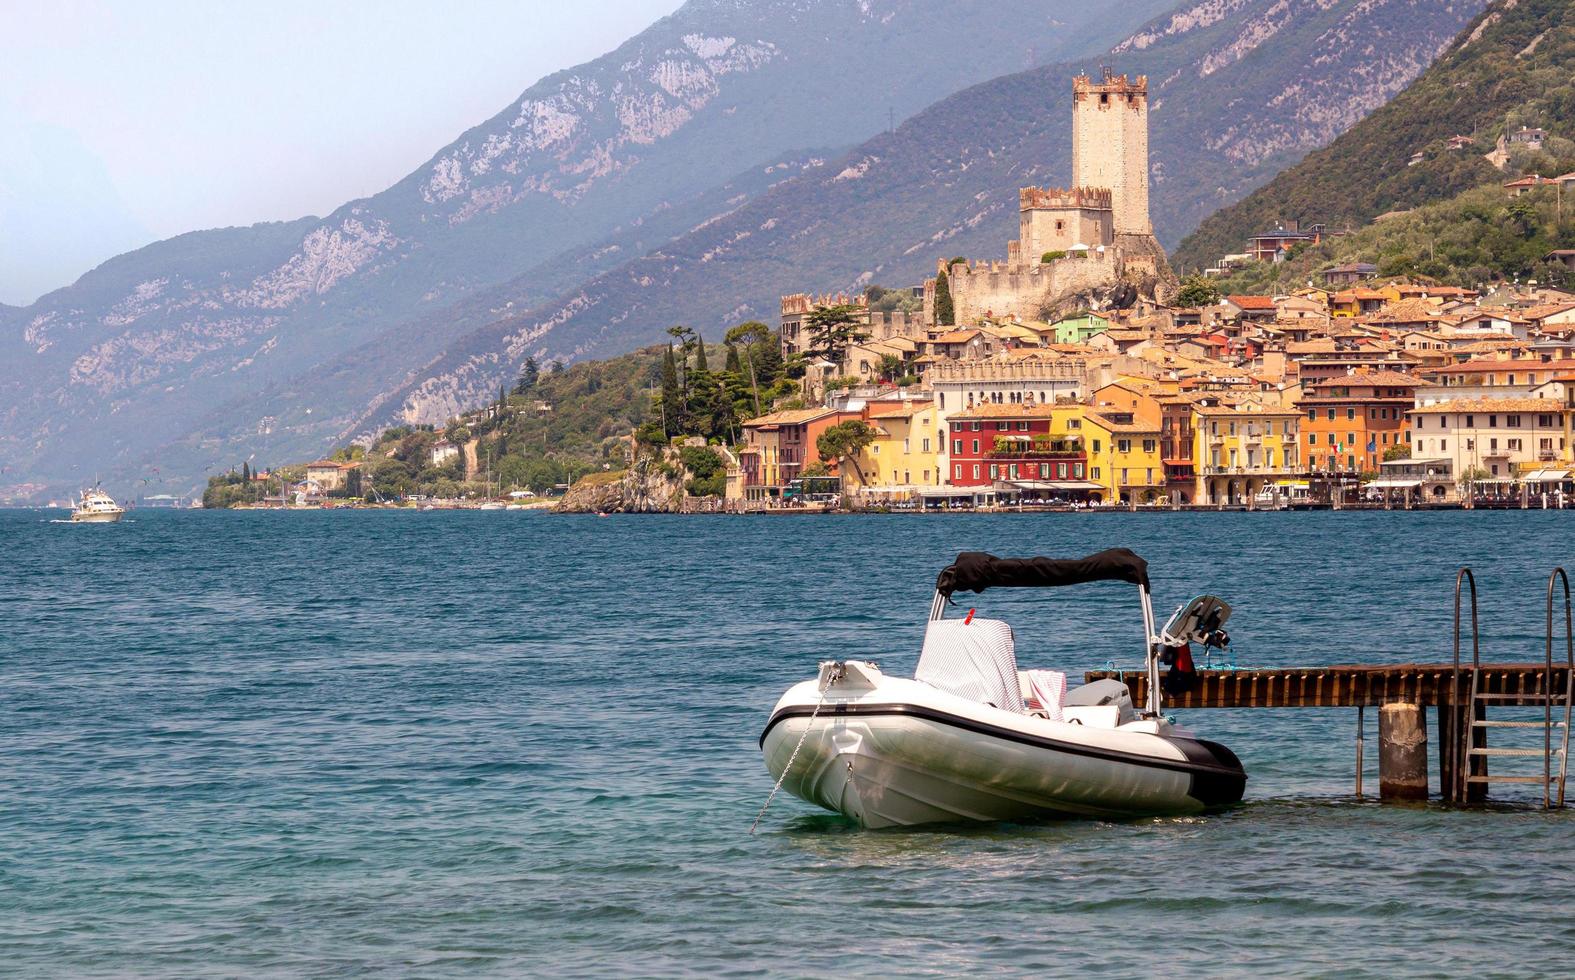 vue depuis la promenade au bord du lac jusqu'à la célèbre ville méditerranéenne de malcesine, lago di garda lac de garde, italie photo